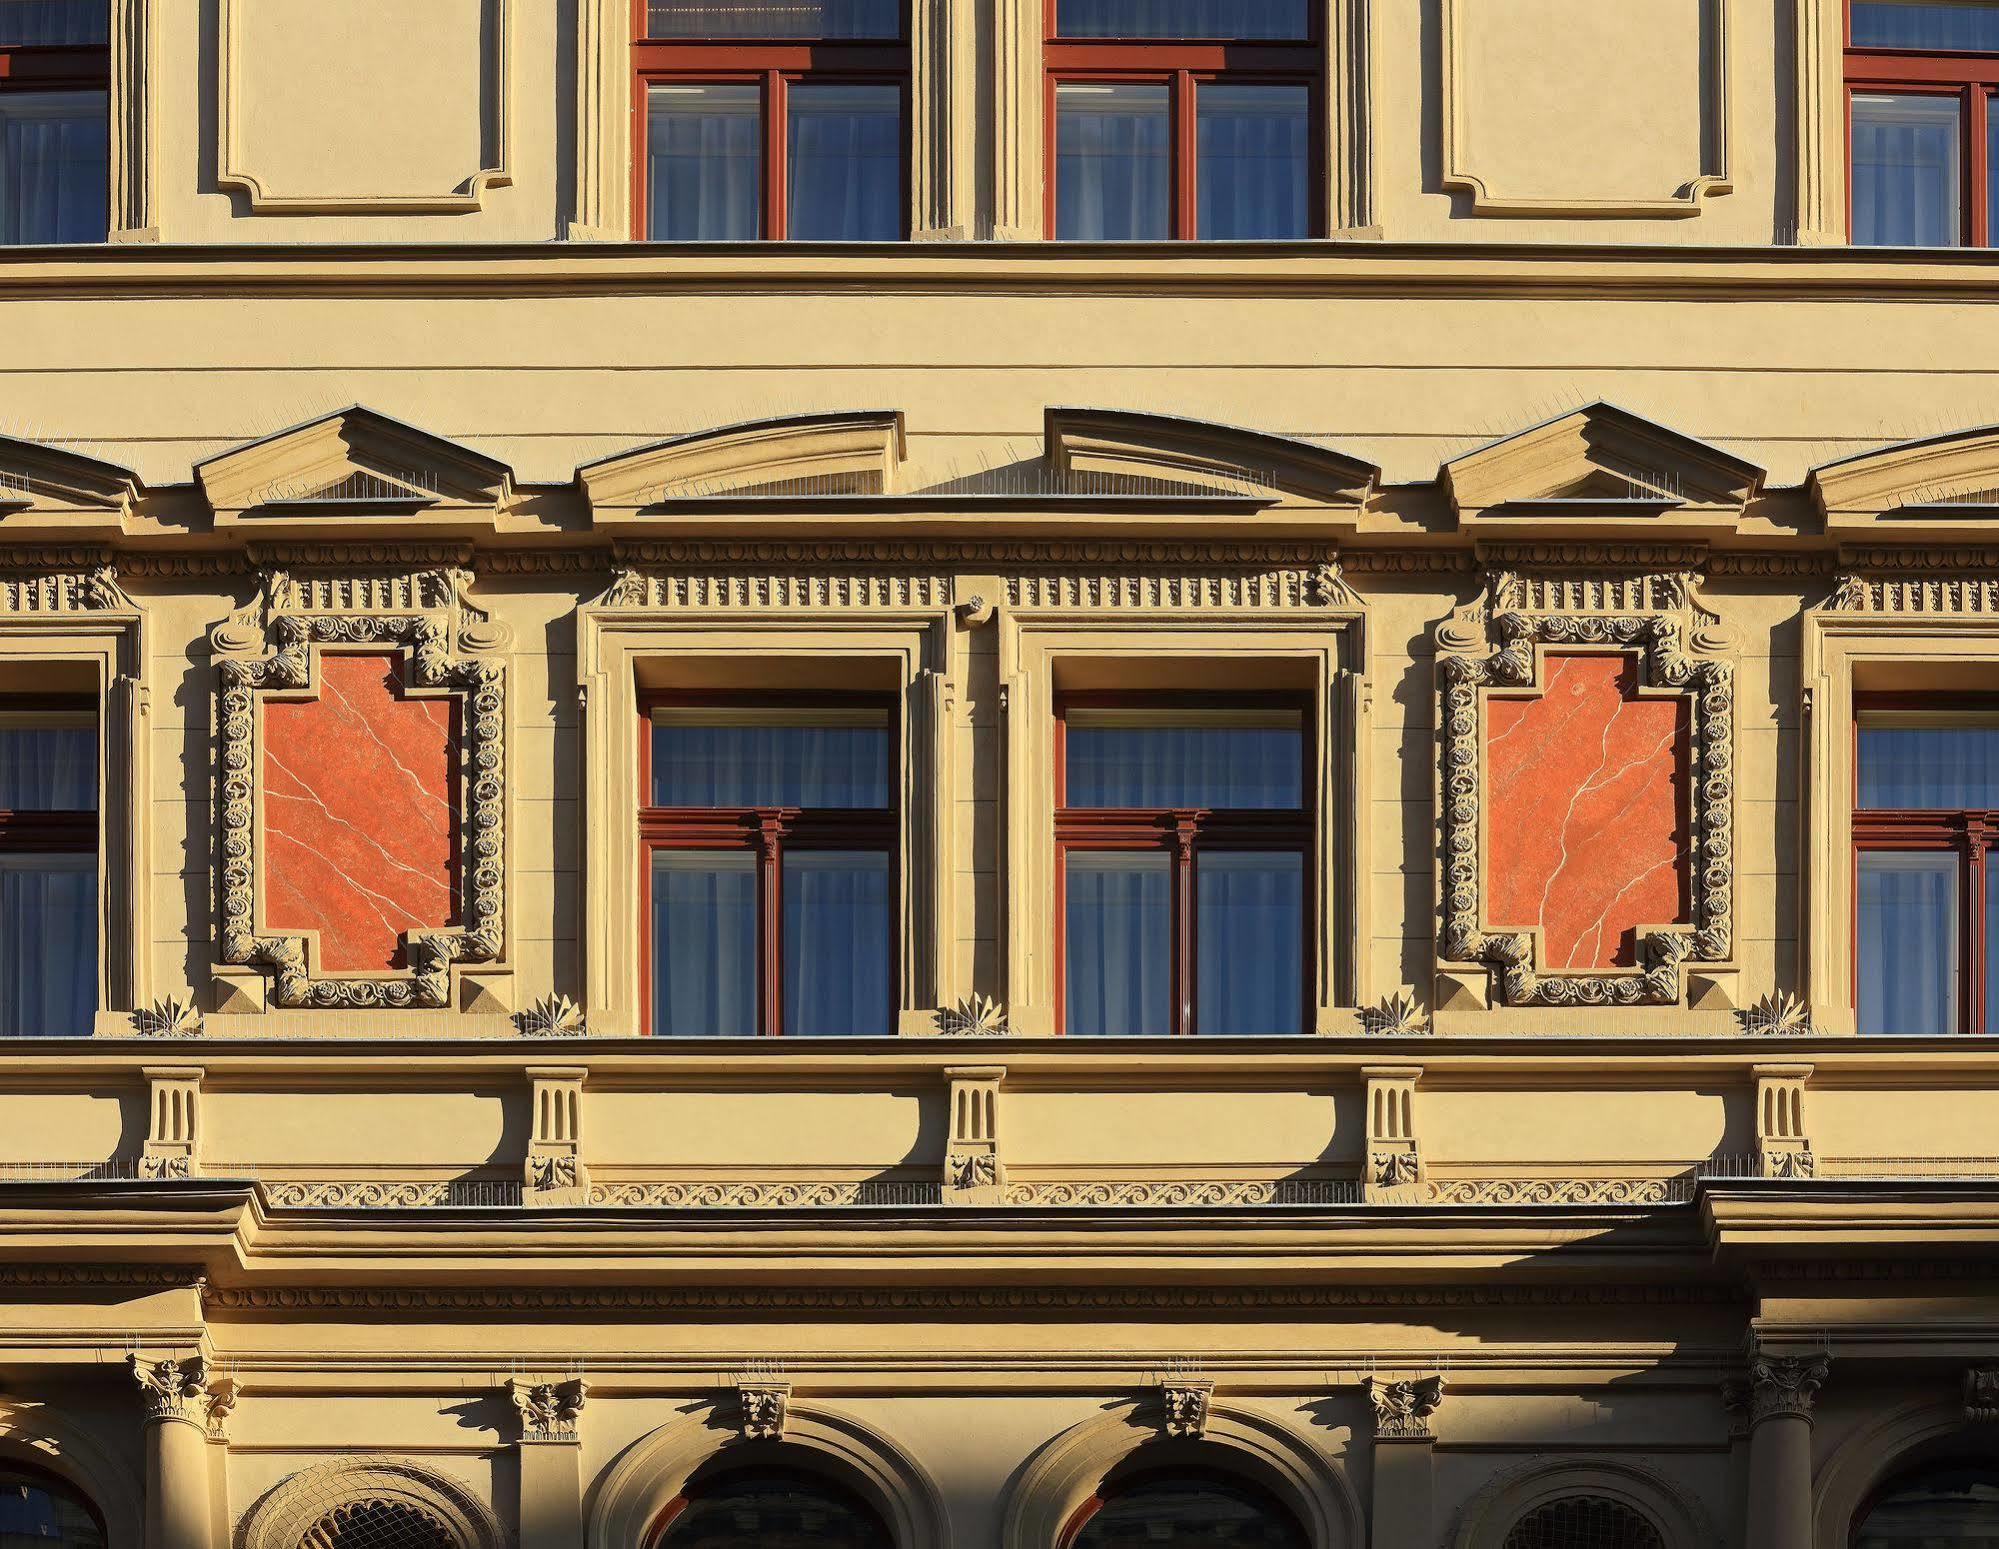 Salvator Boutique Hotel Prague Extérieur photo